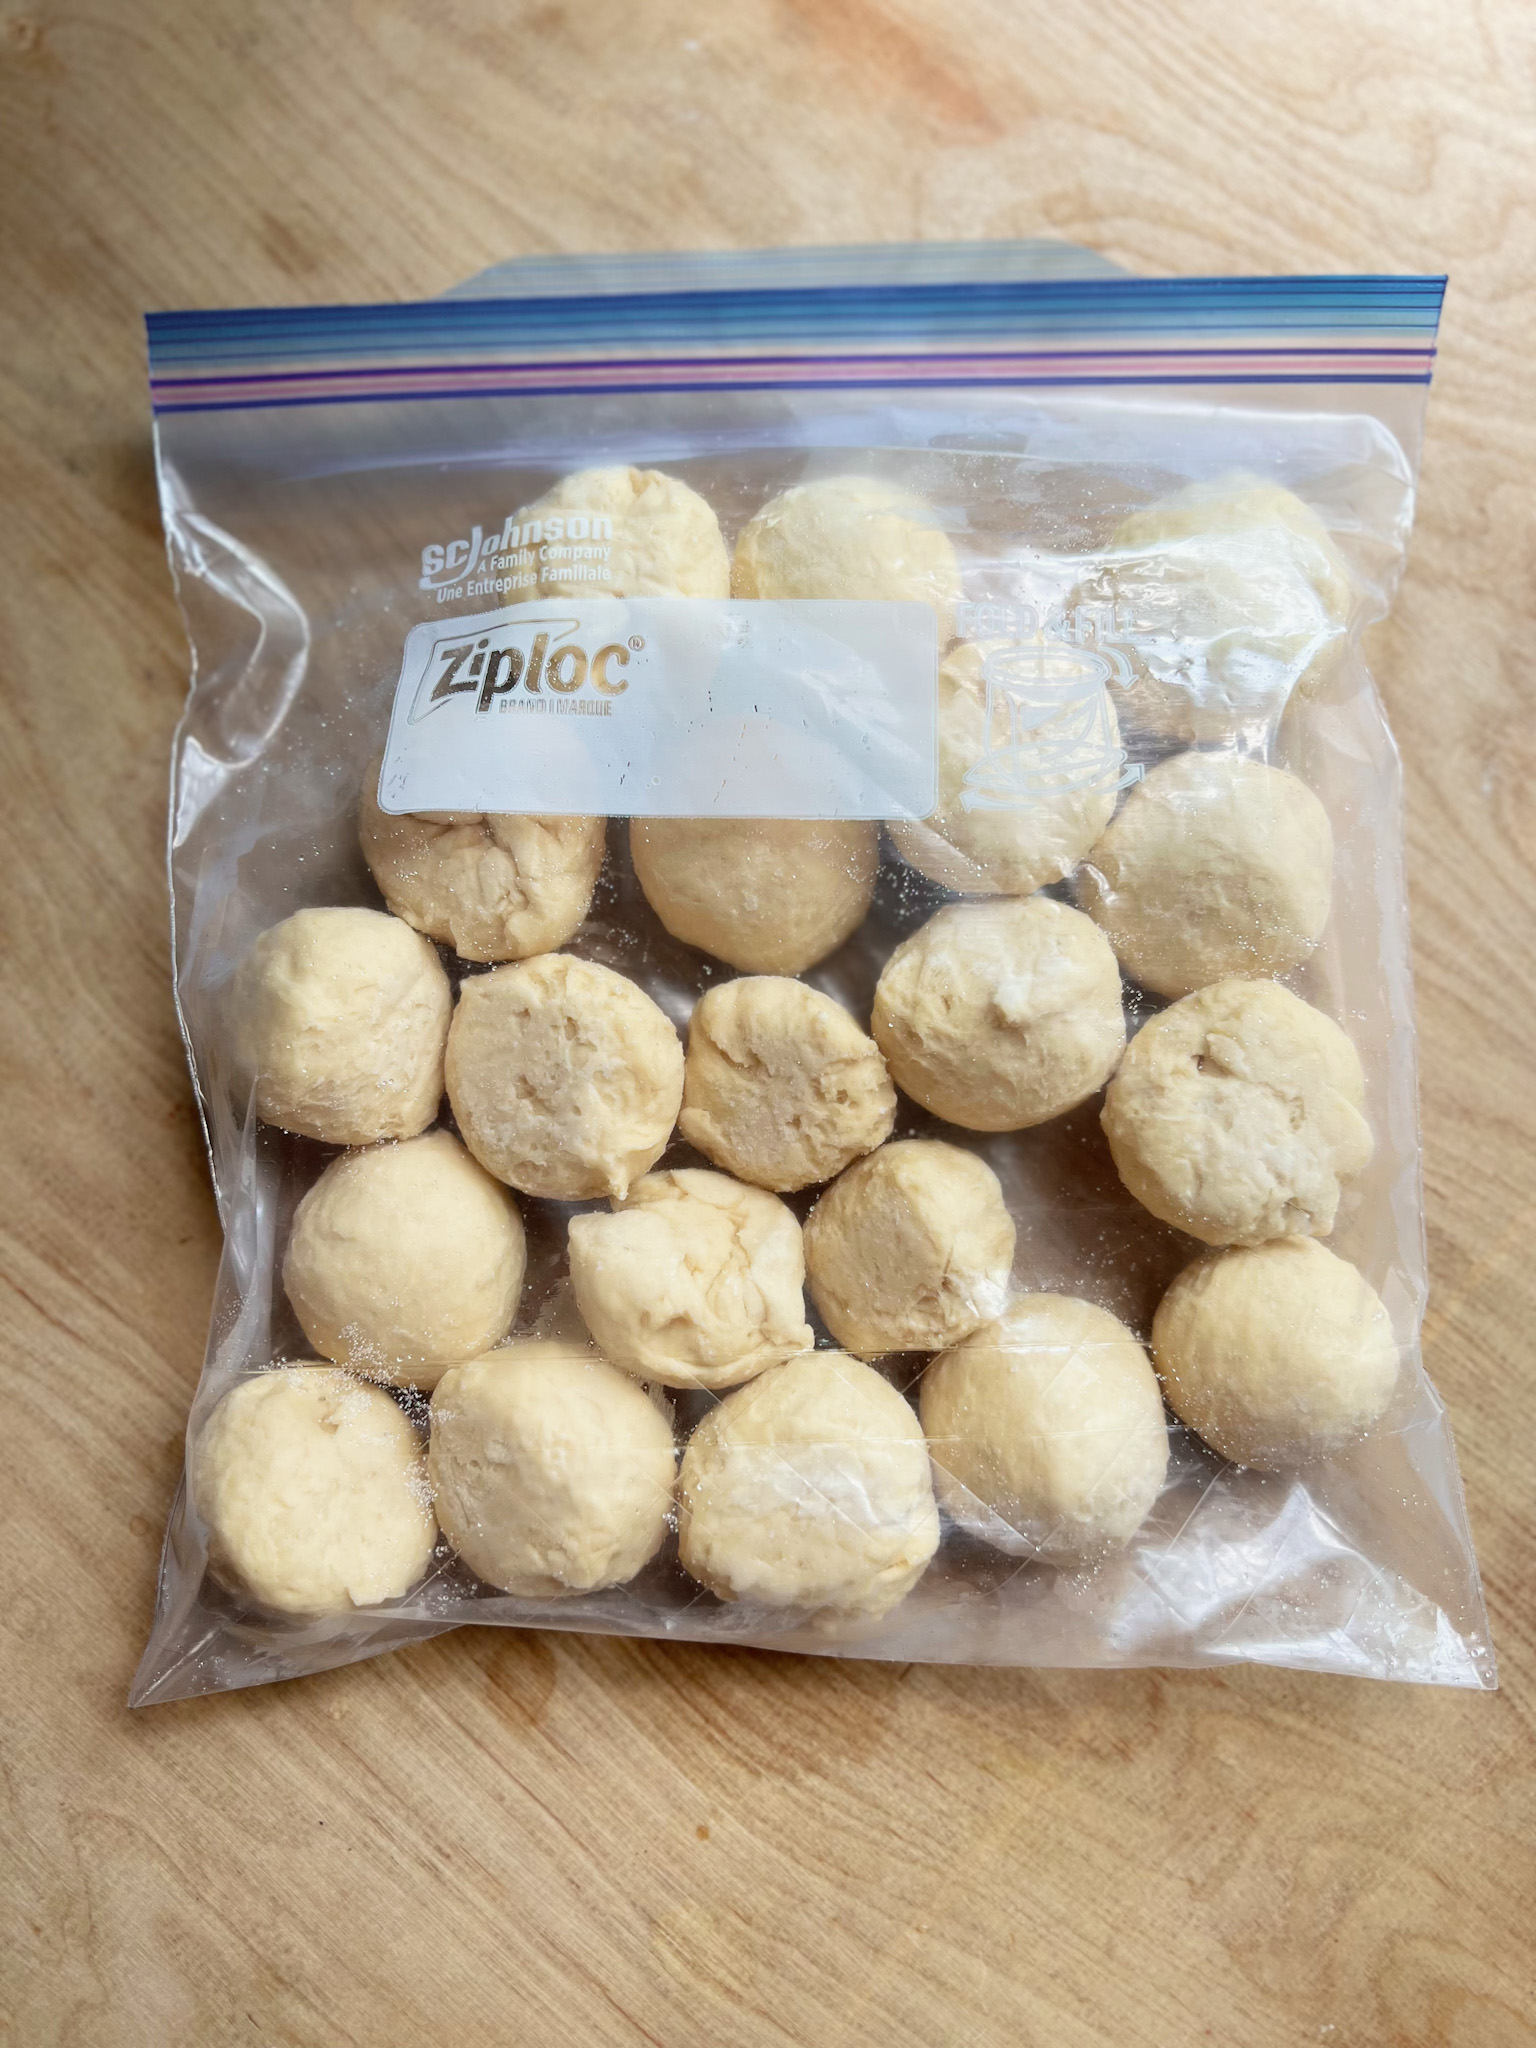 Frozen un-baked yeast rolls in a plastic freezer bag